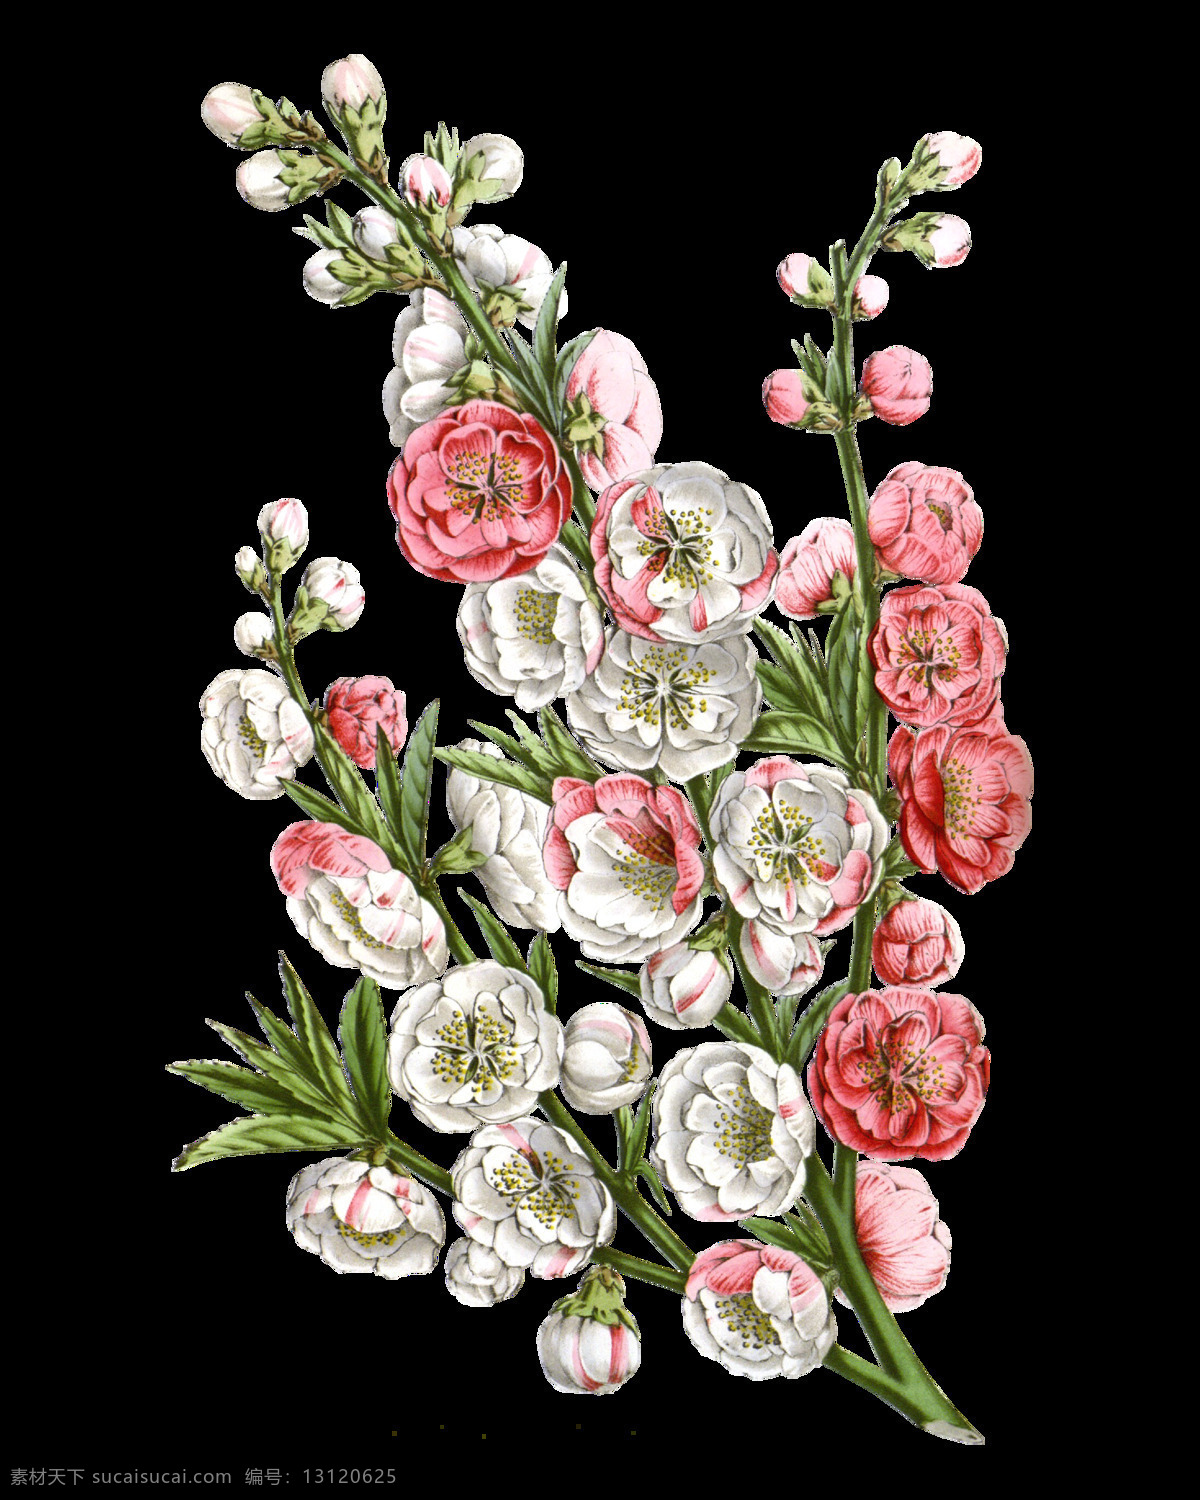 粉色 高清 精美 花朵 元素 含苞待放 矢量花朵 矢量花朵素材 矢量素材 手绘花朵素材 鲜花花朵 鲜花花蕾 鲜花素材花卉